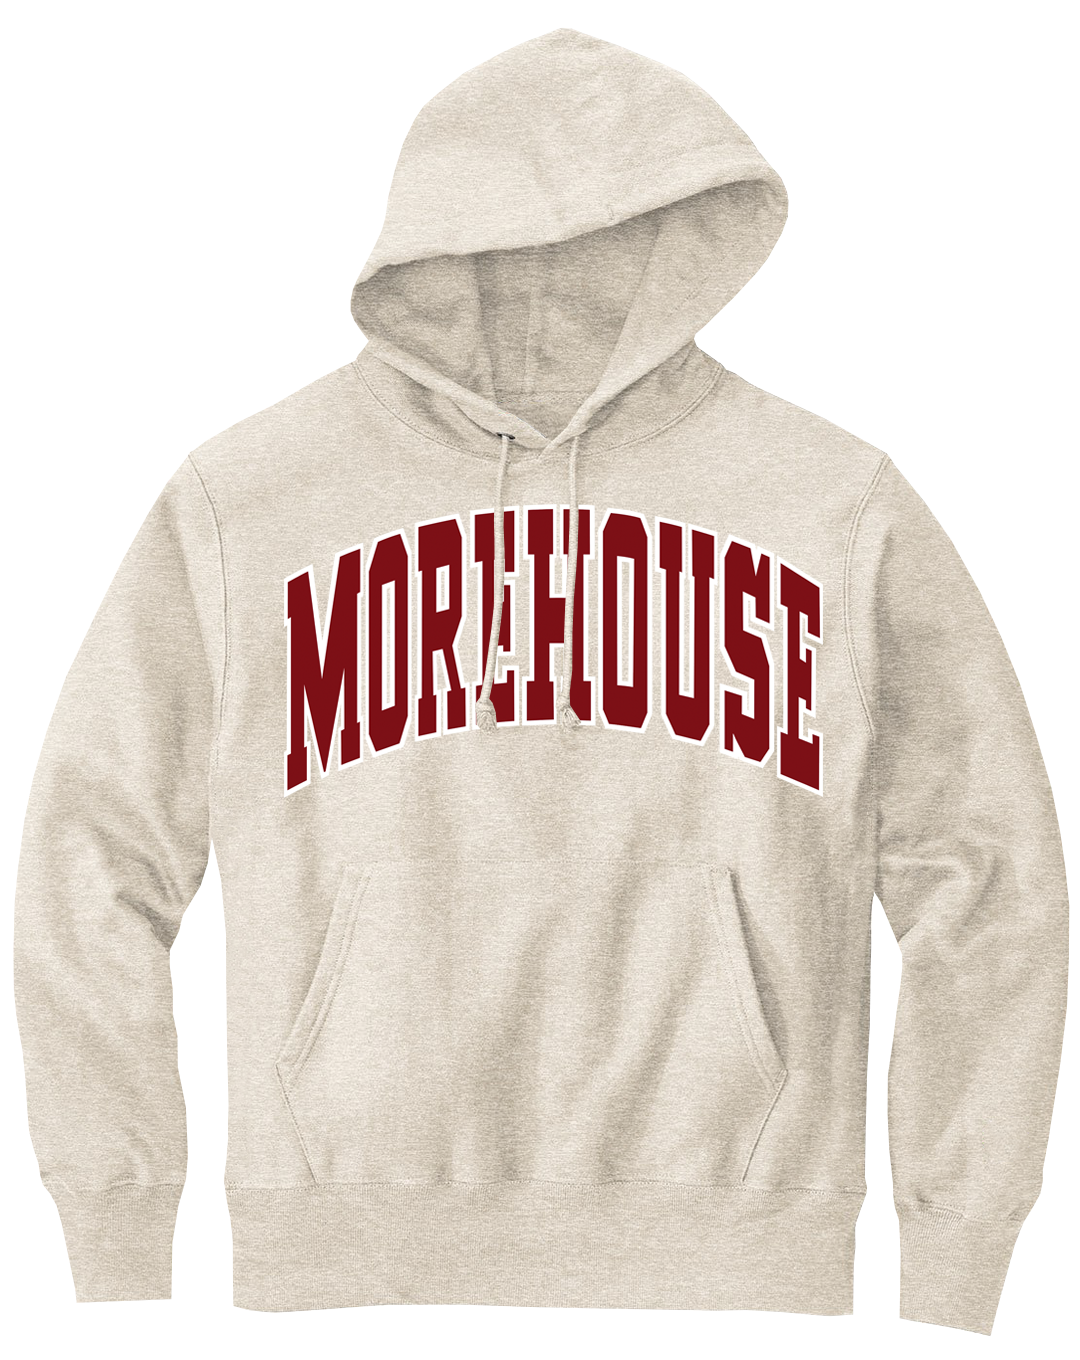 Morehouse 90s Retro Hoodie